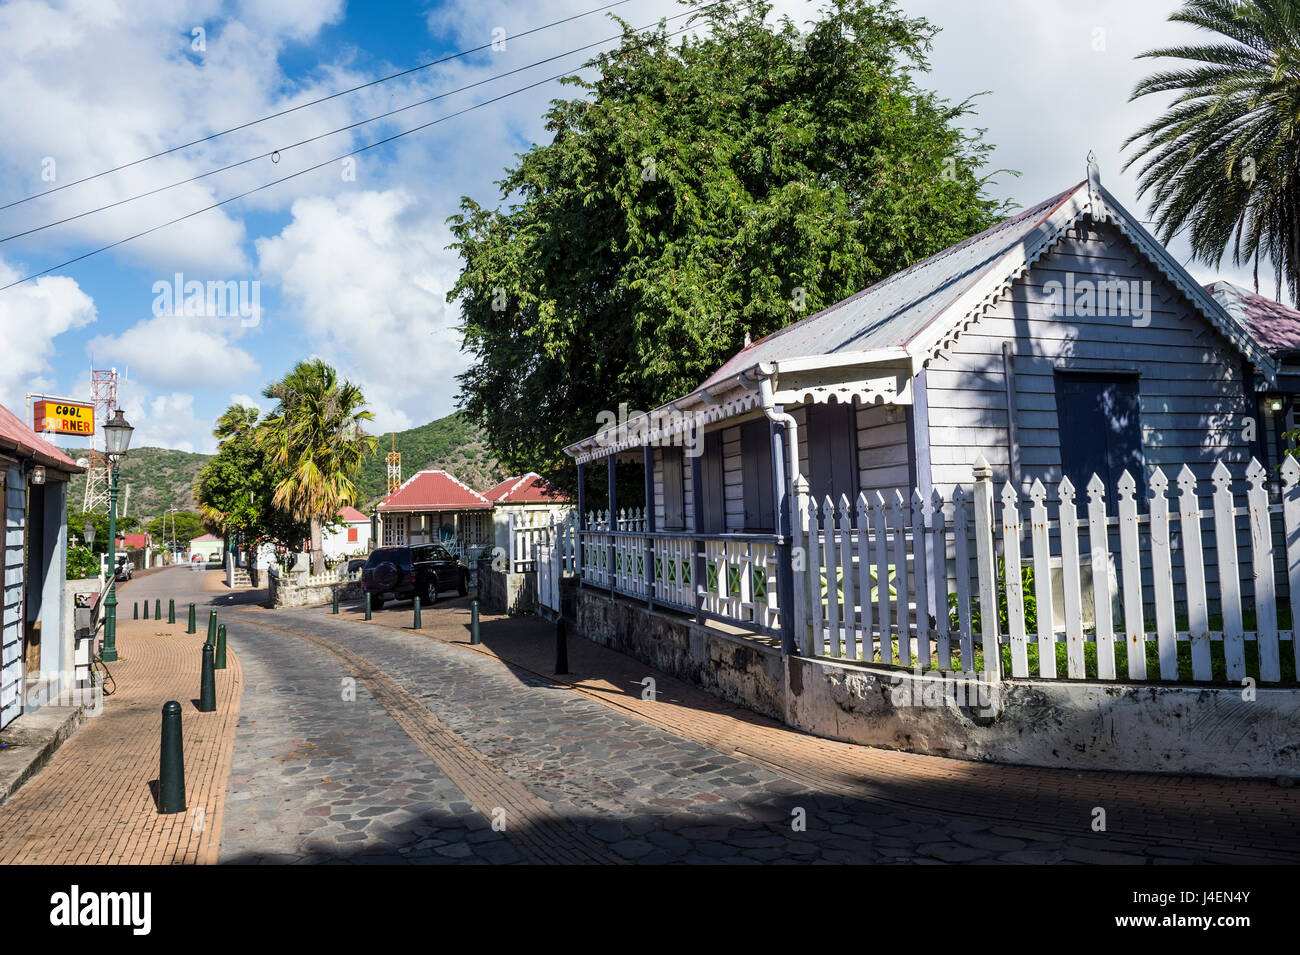 Centre historique de Oranjestad, capitale de Saint-Eustache, Statia, Netherland Antilles, Antilles, Caraïbes, Amérique Centrale Banque D'Images